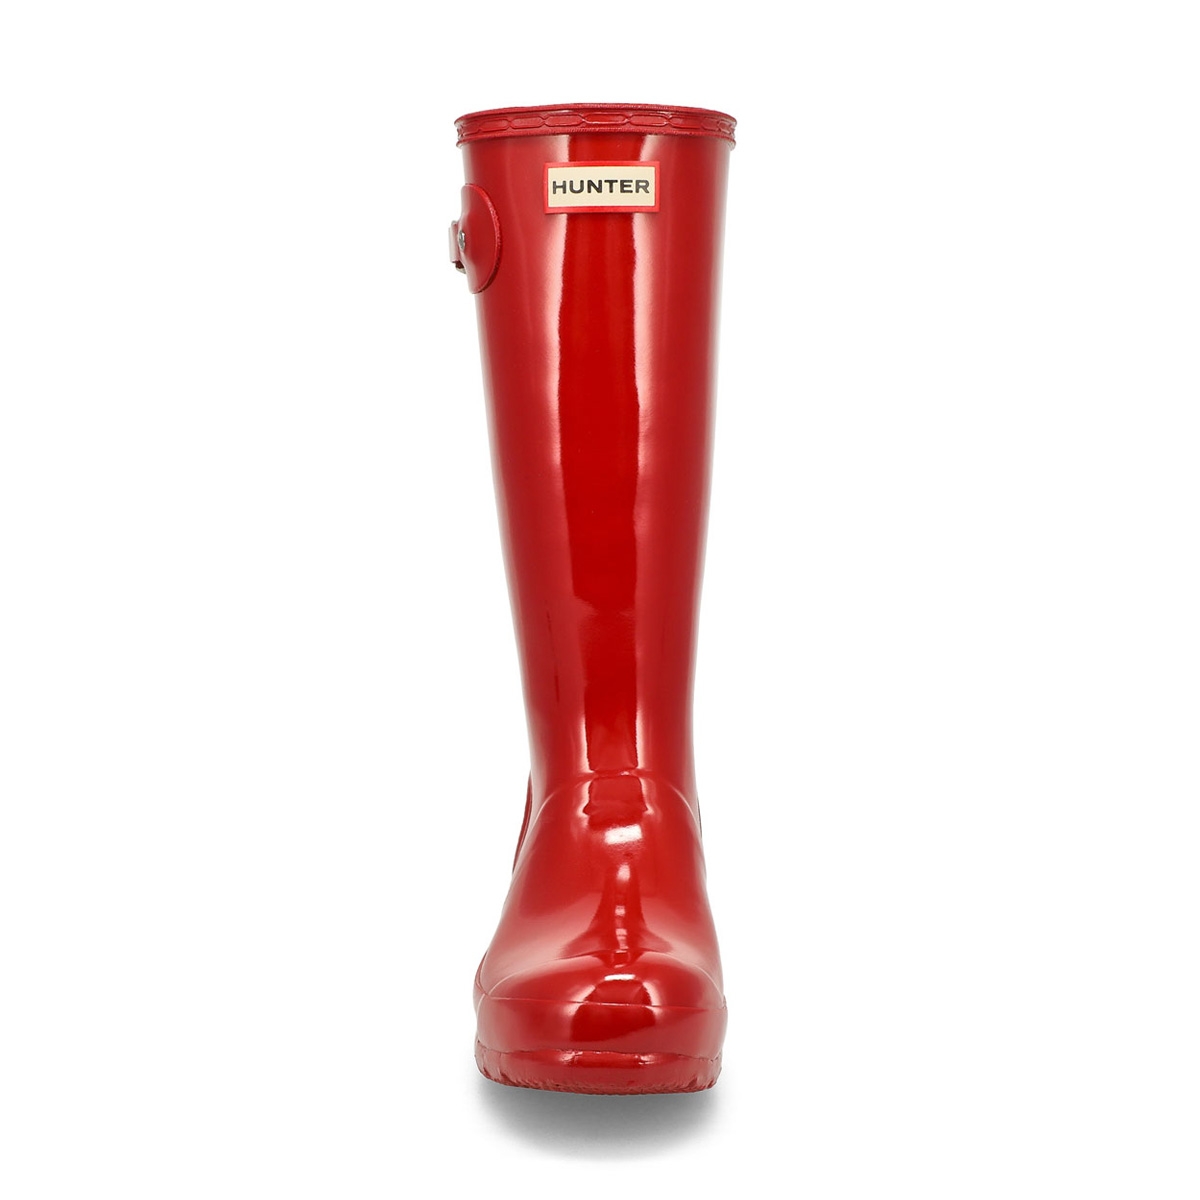 Girls' ORIGINAL GLOSS military red rain boots